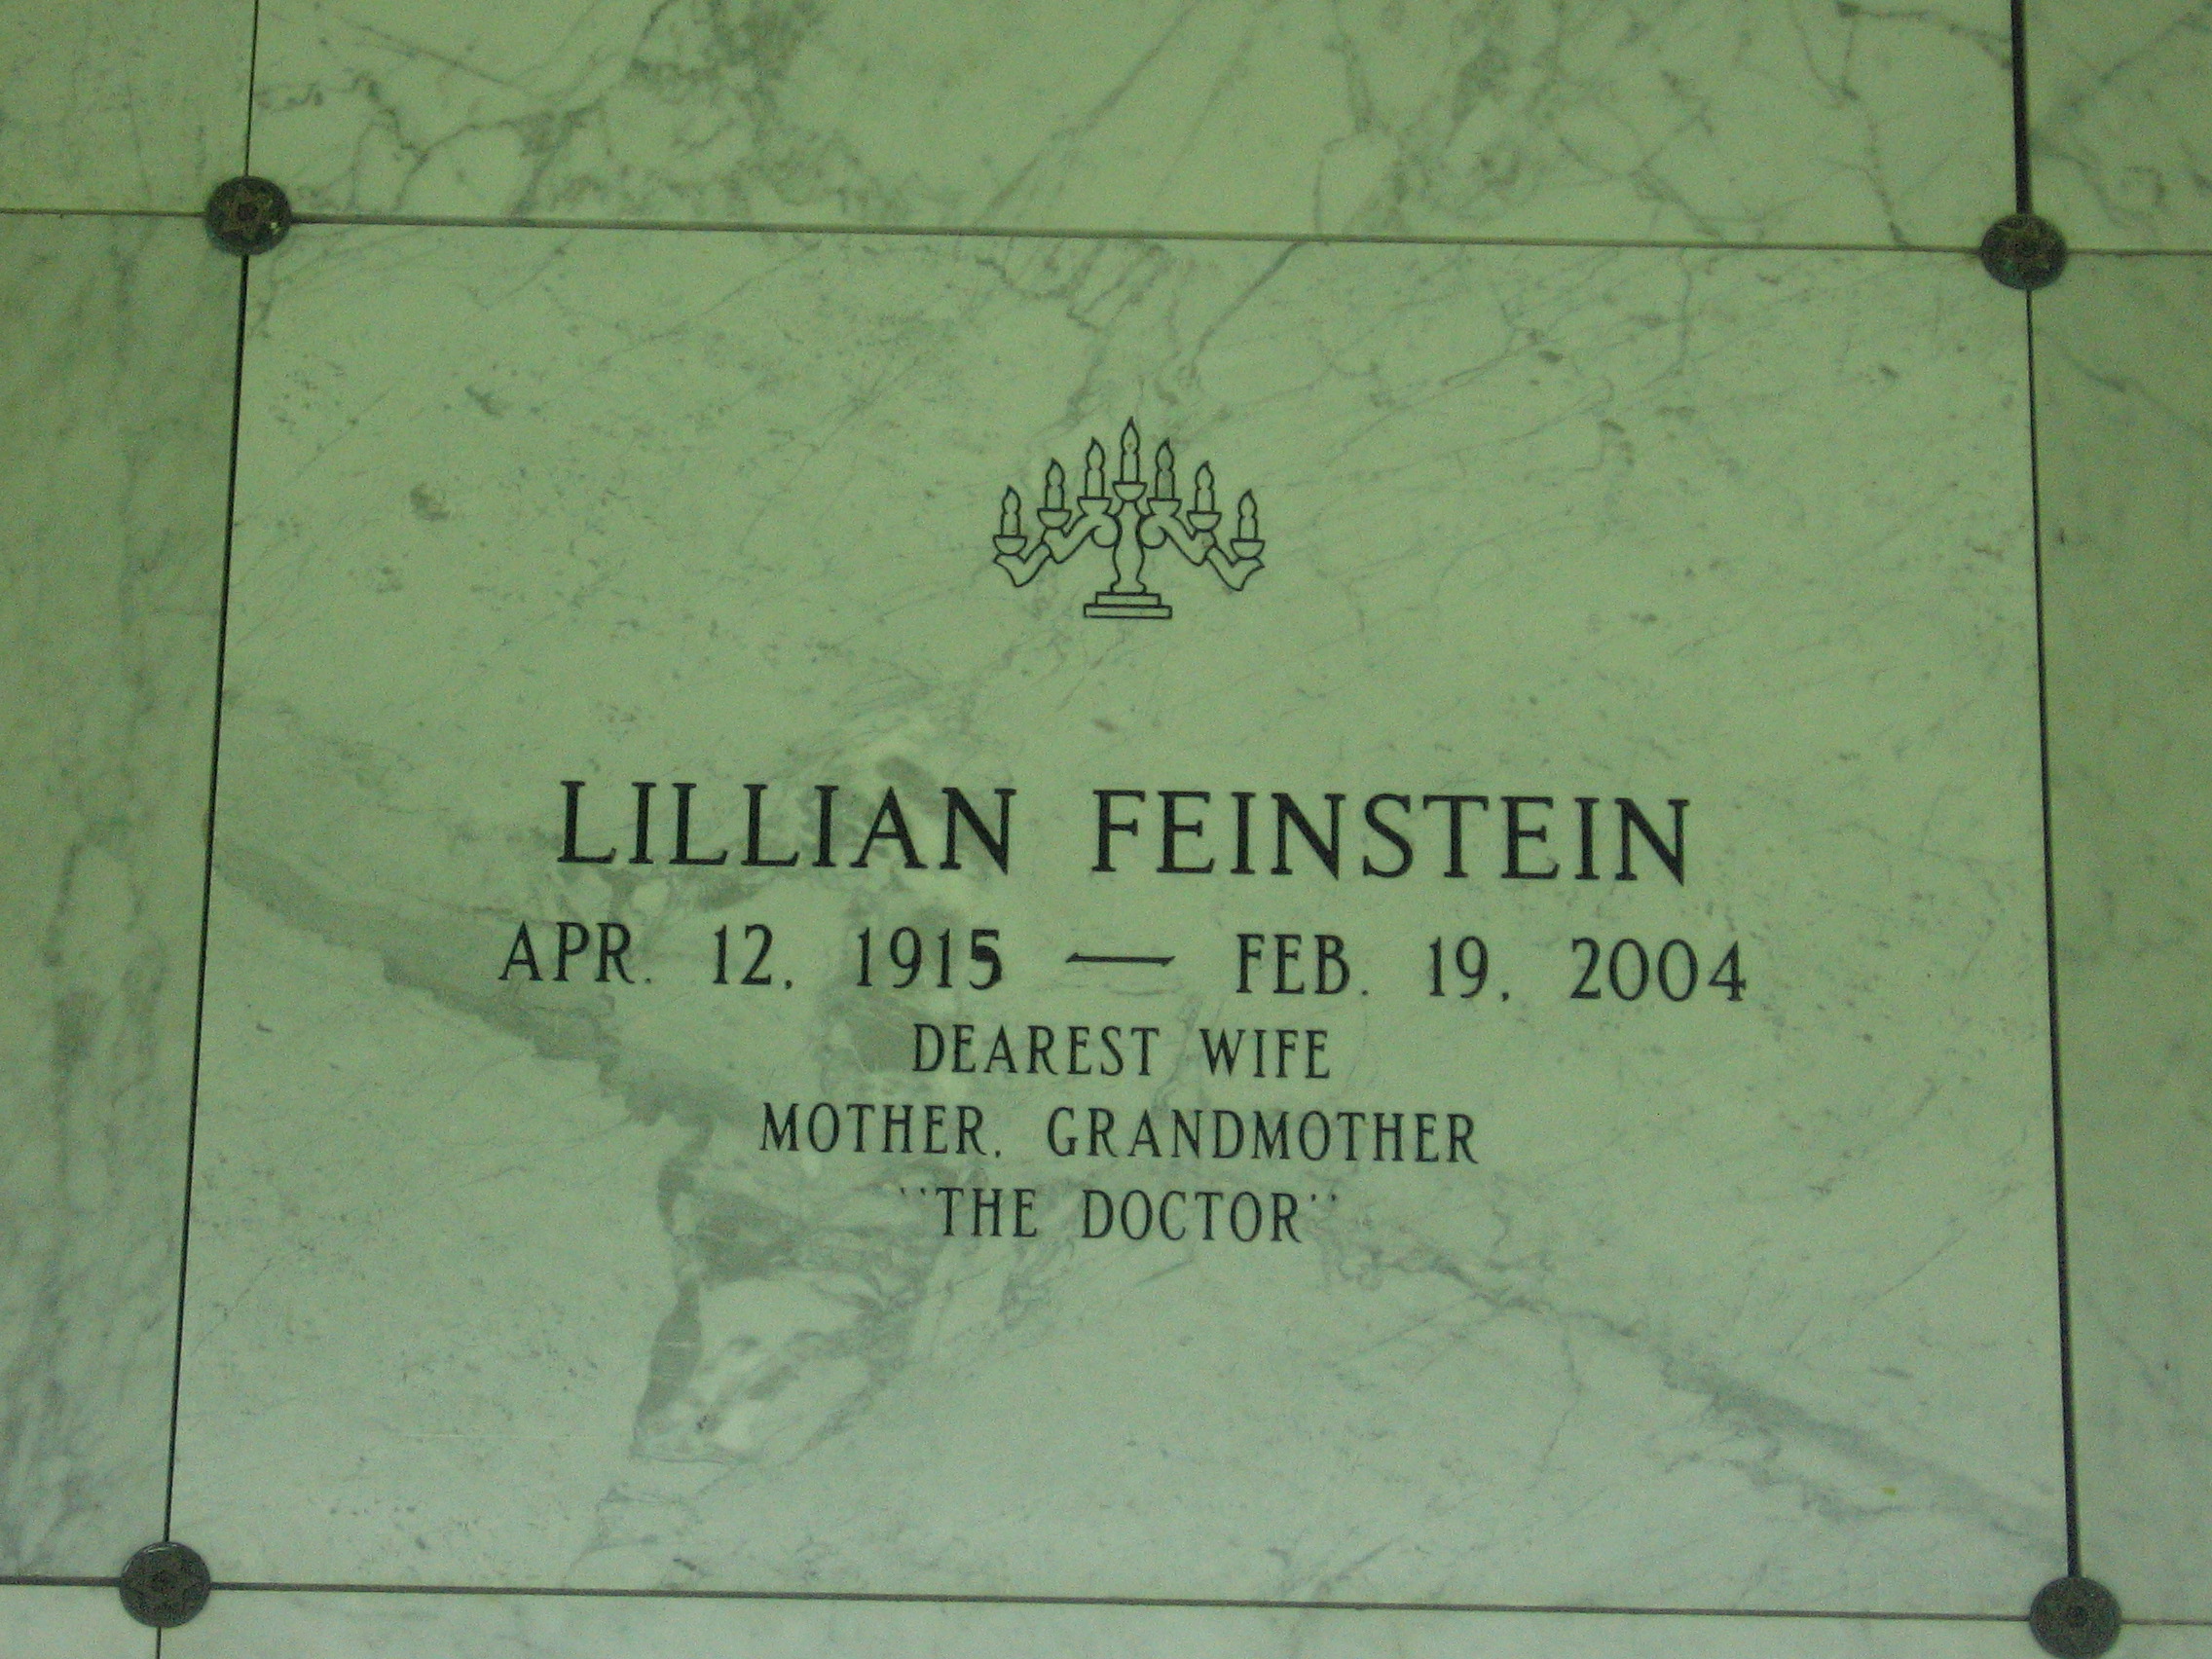 Lillian Feinstein